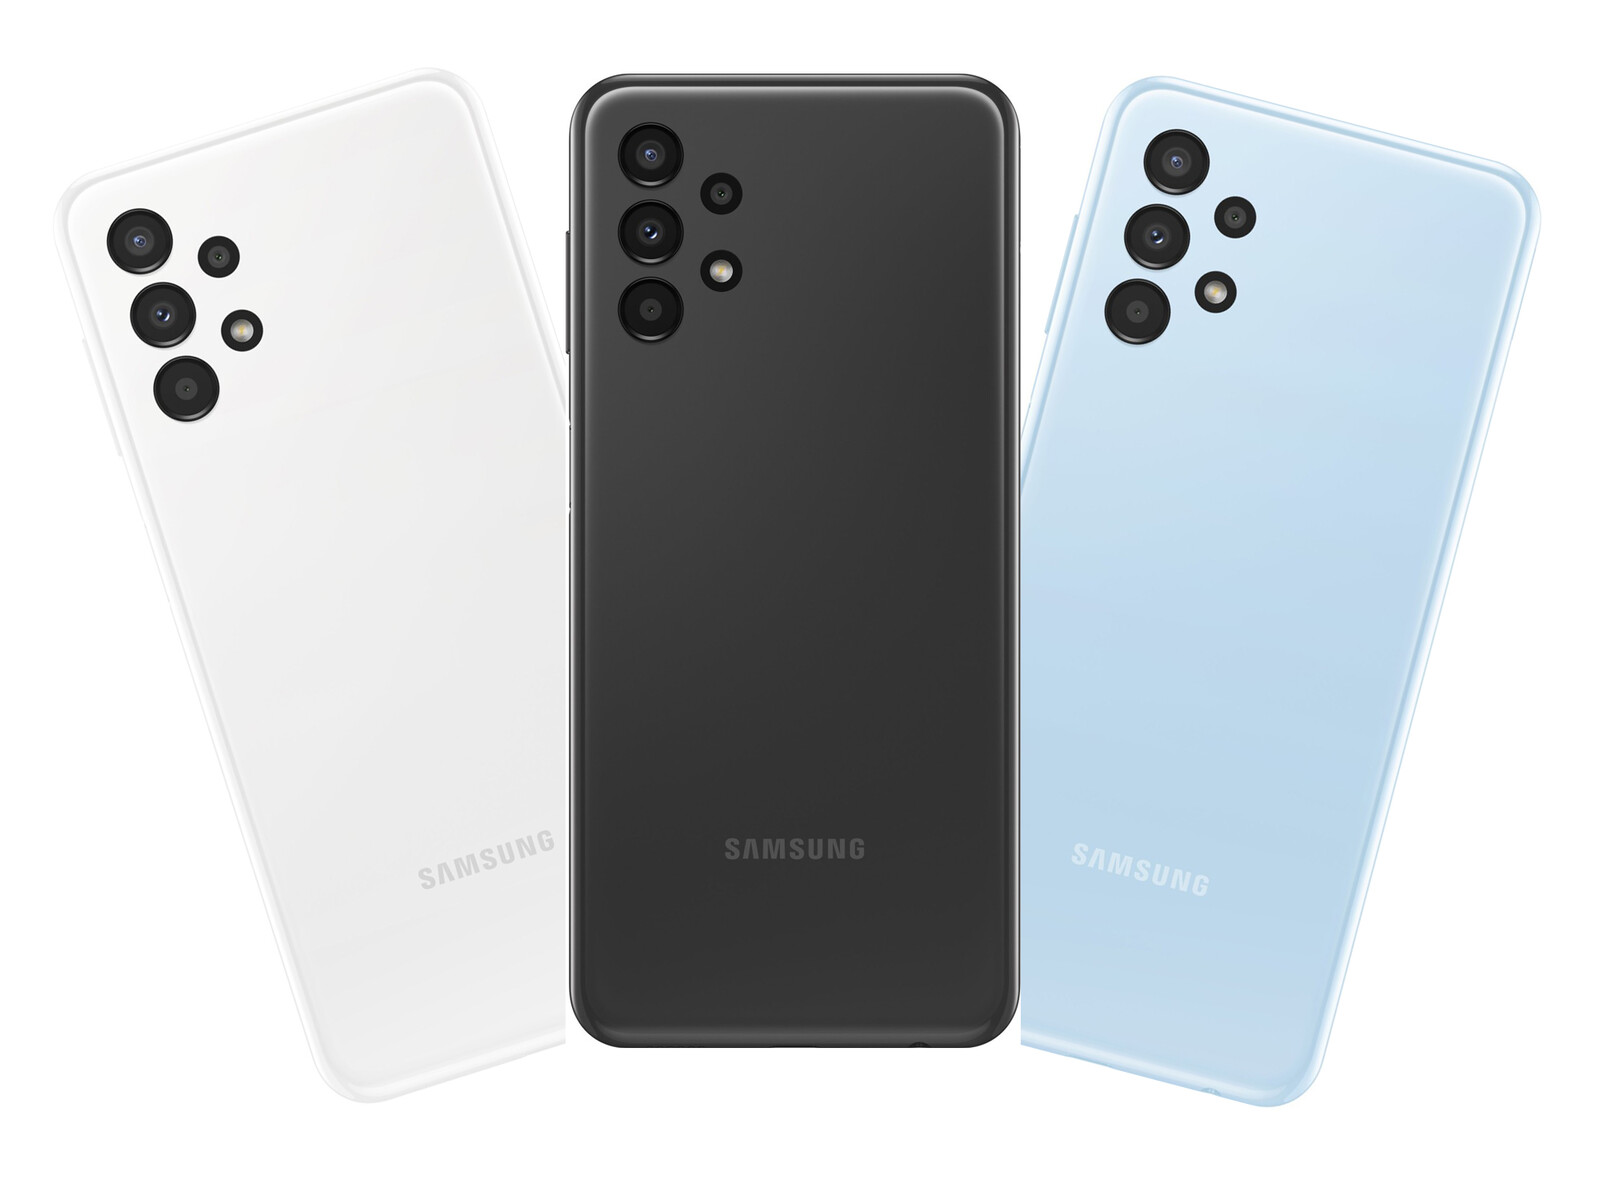 Với sự ra mắt của Samsung Galaxy A Series, người dùng đang nóng lòng để biết thêm về điện thoại này. Và đây chính là cơ hội để bạn đọc đánh giá về sản phẩm này từ Notebookcheck.net. Điều ấn tượng về Galaxy A Series chính là camera đa dạng và khả năng kết nối 4G mạnh mẽ. Hãy nhấn vào hình ảnh để tìm hiểu thêm.